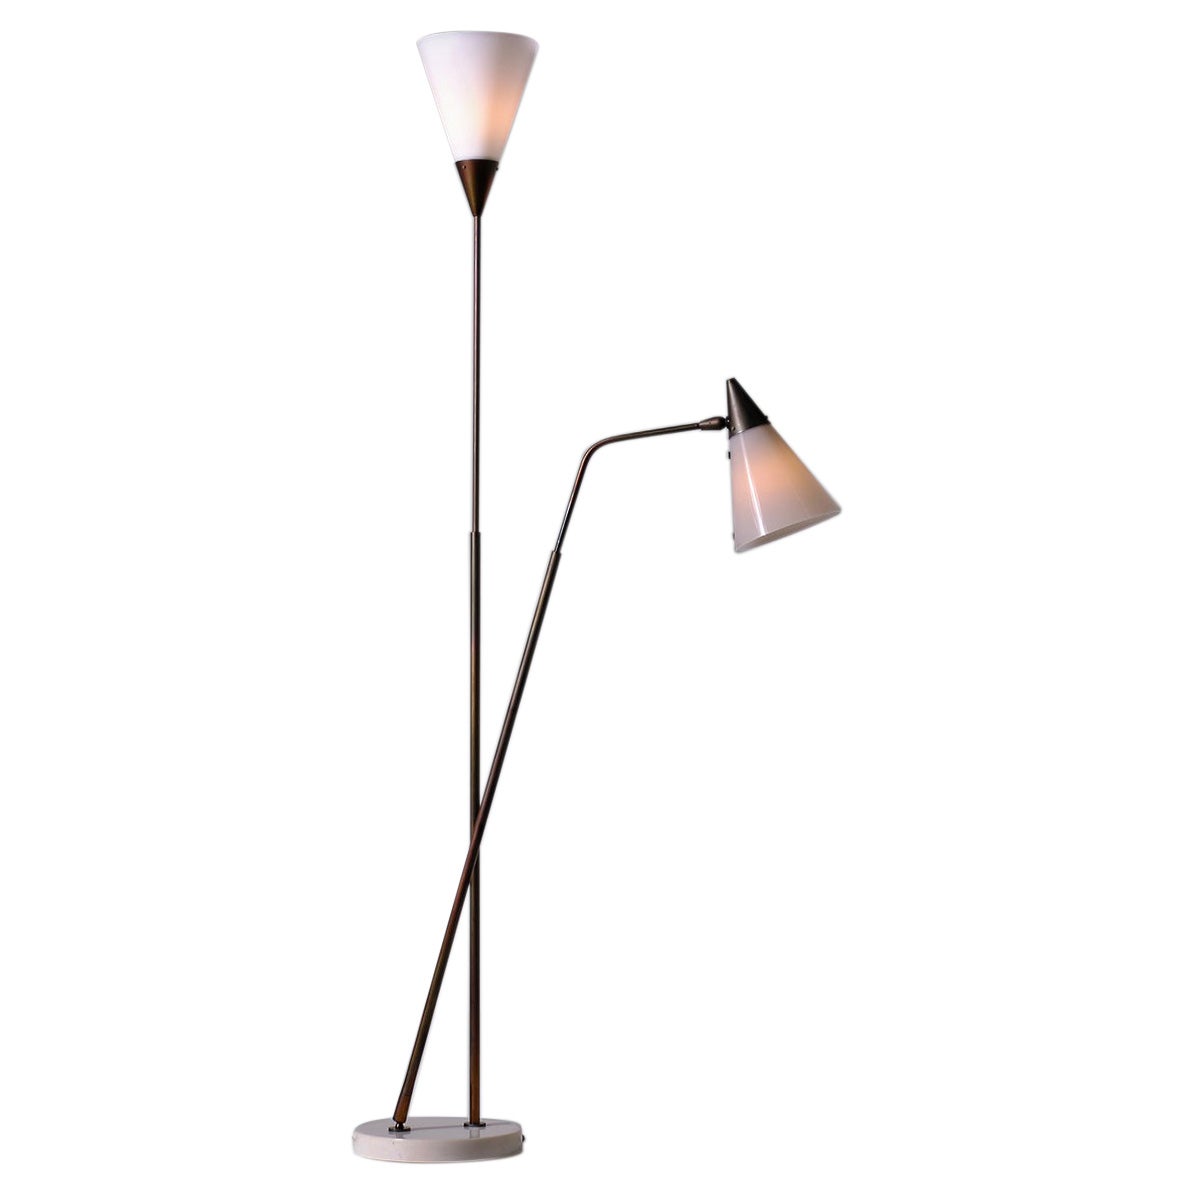 Giuseppe Ostuni for O-Luce Adjustable Floor Lamp, Italy 1952